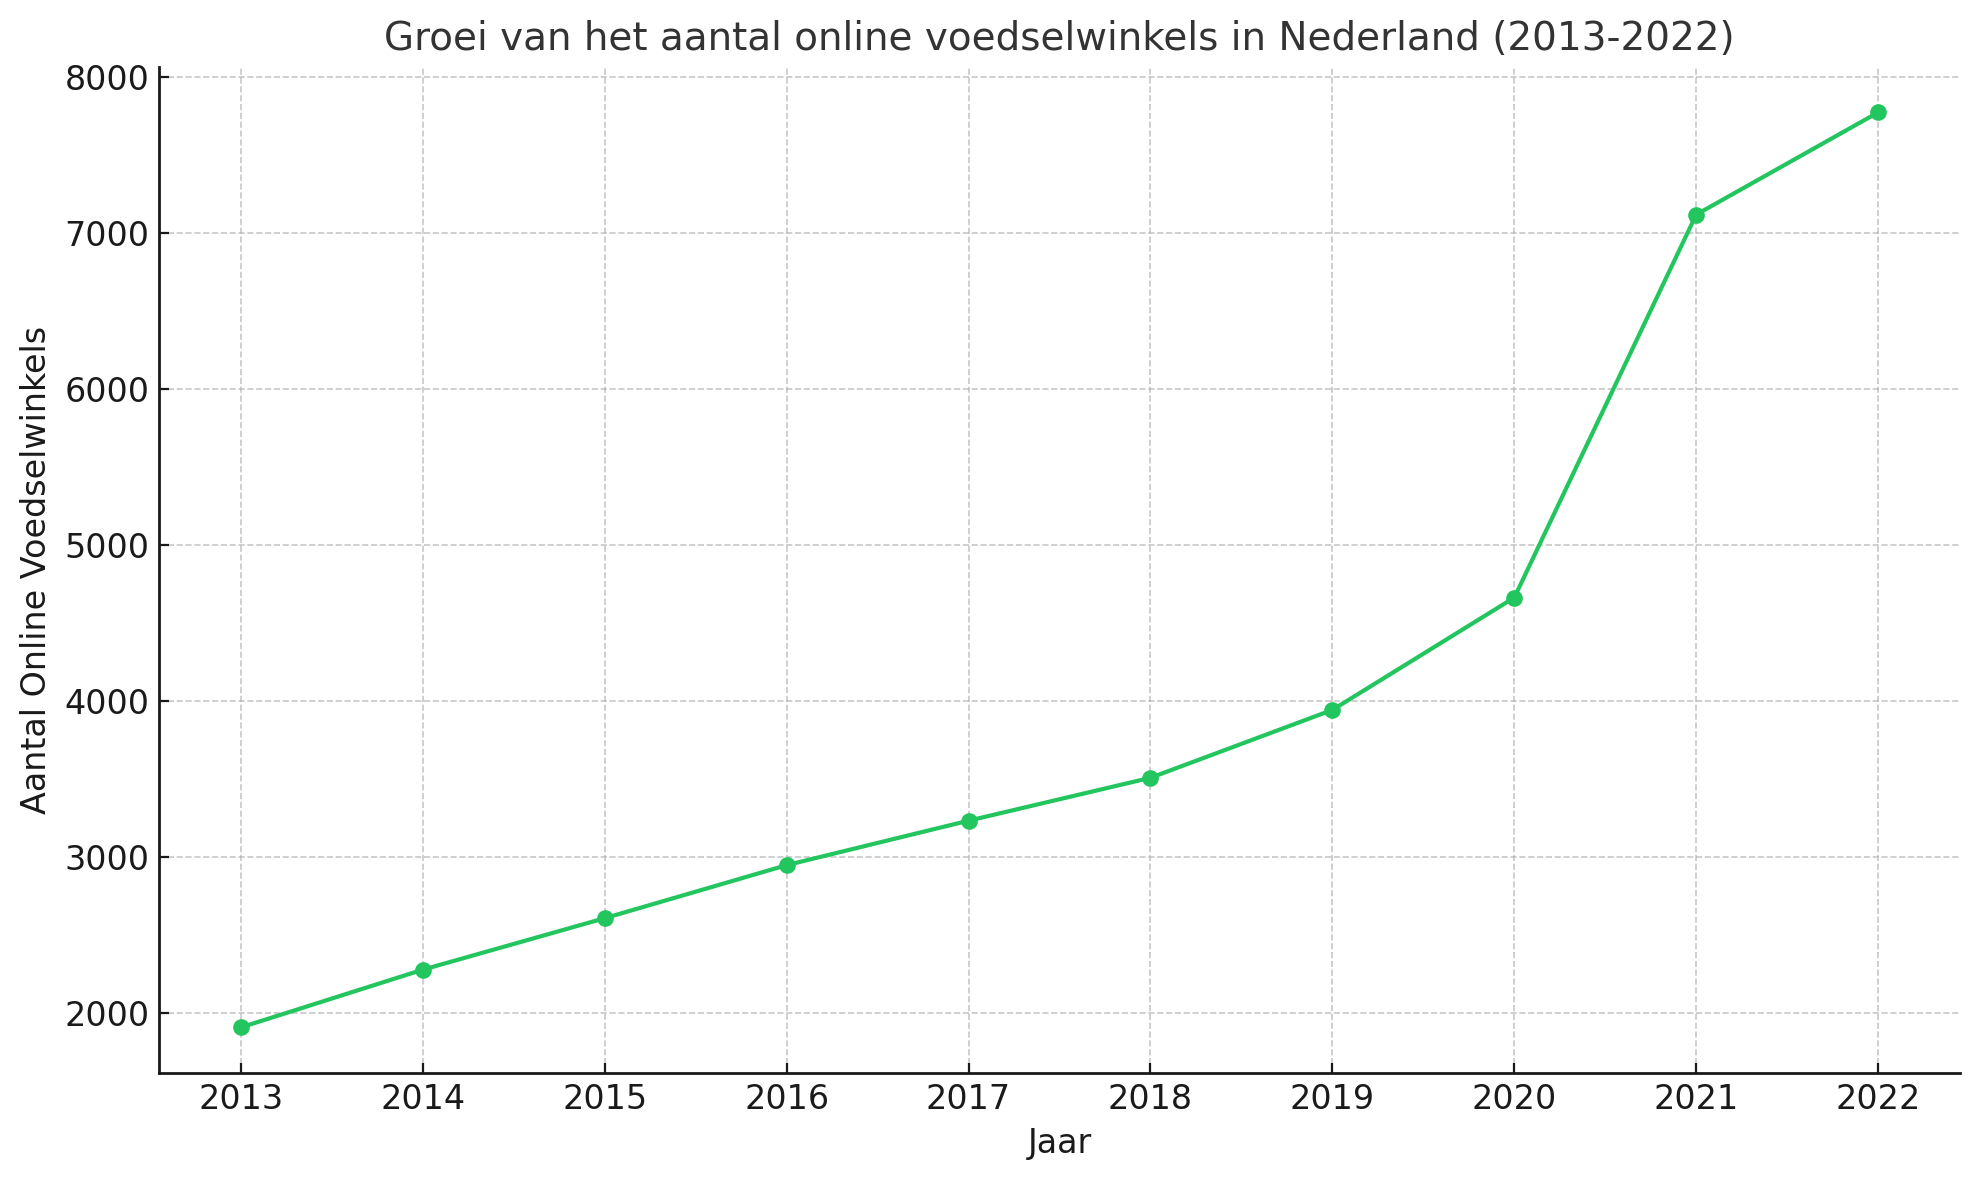 Groei van het aantal online voedselwinkels in Nederland